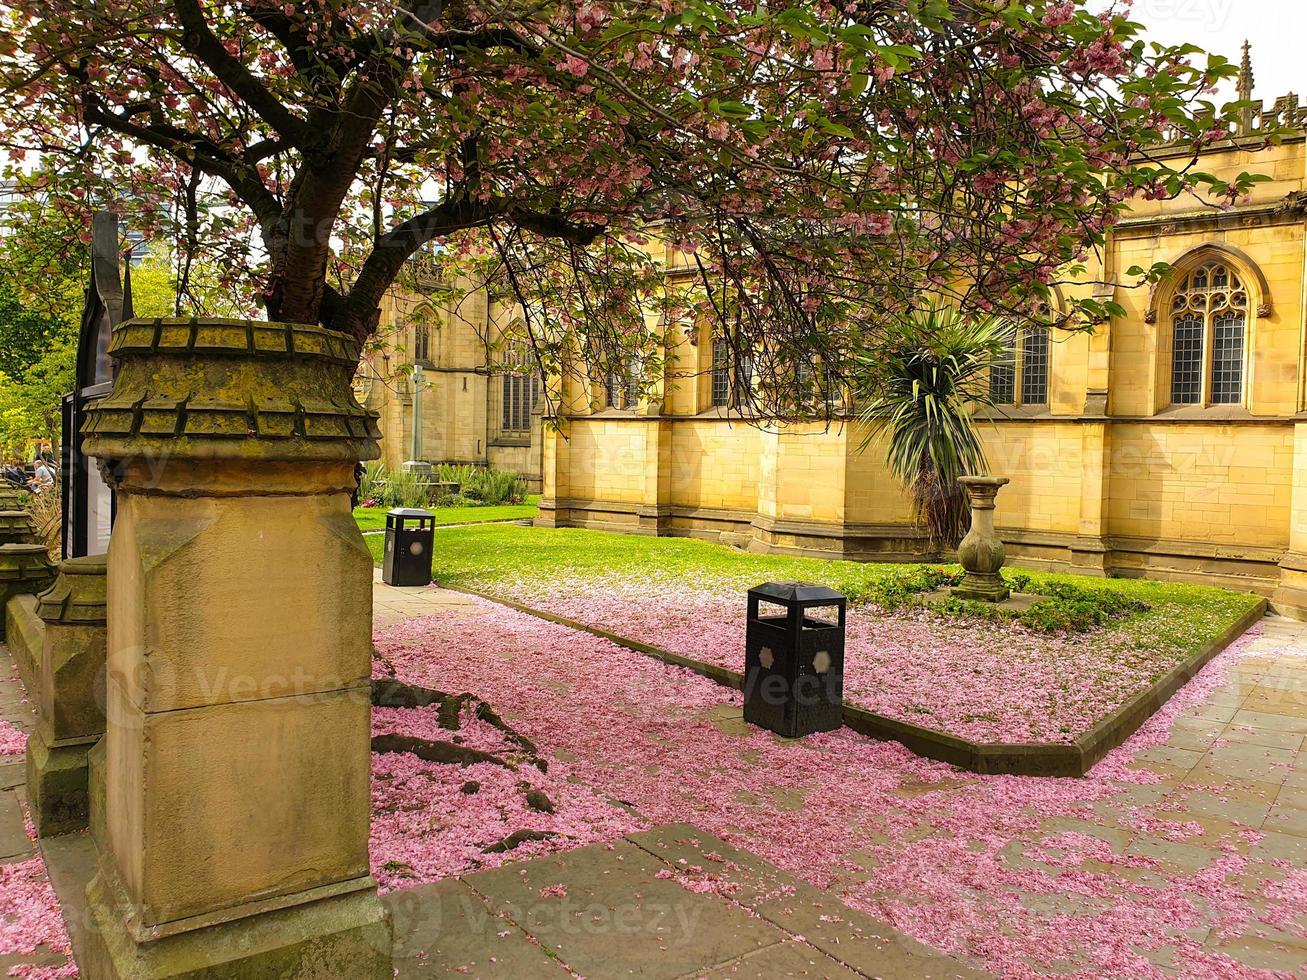 Rosa Kirschblütenblätter, die den Boden in der Kathedrale von Manchester bedecken foto